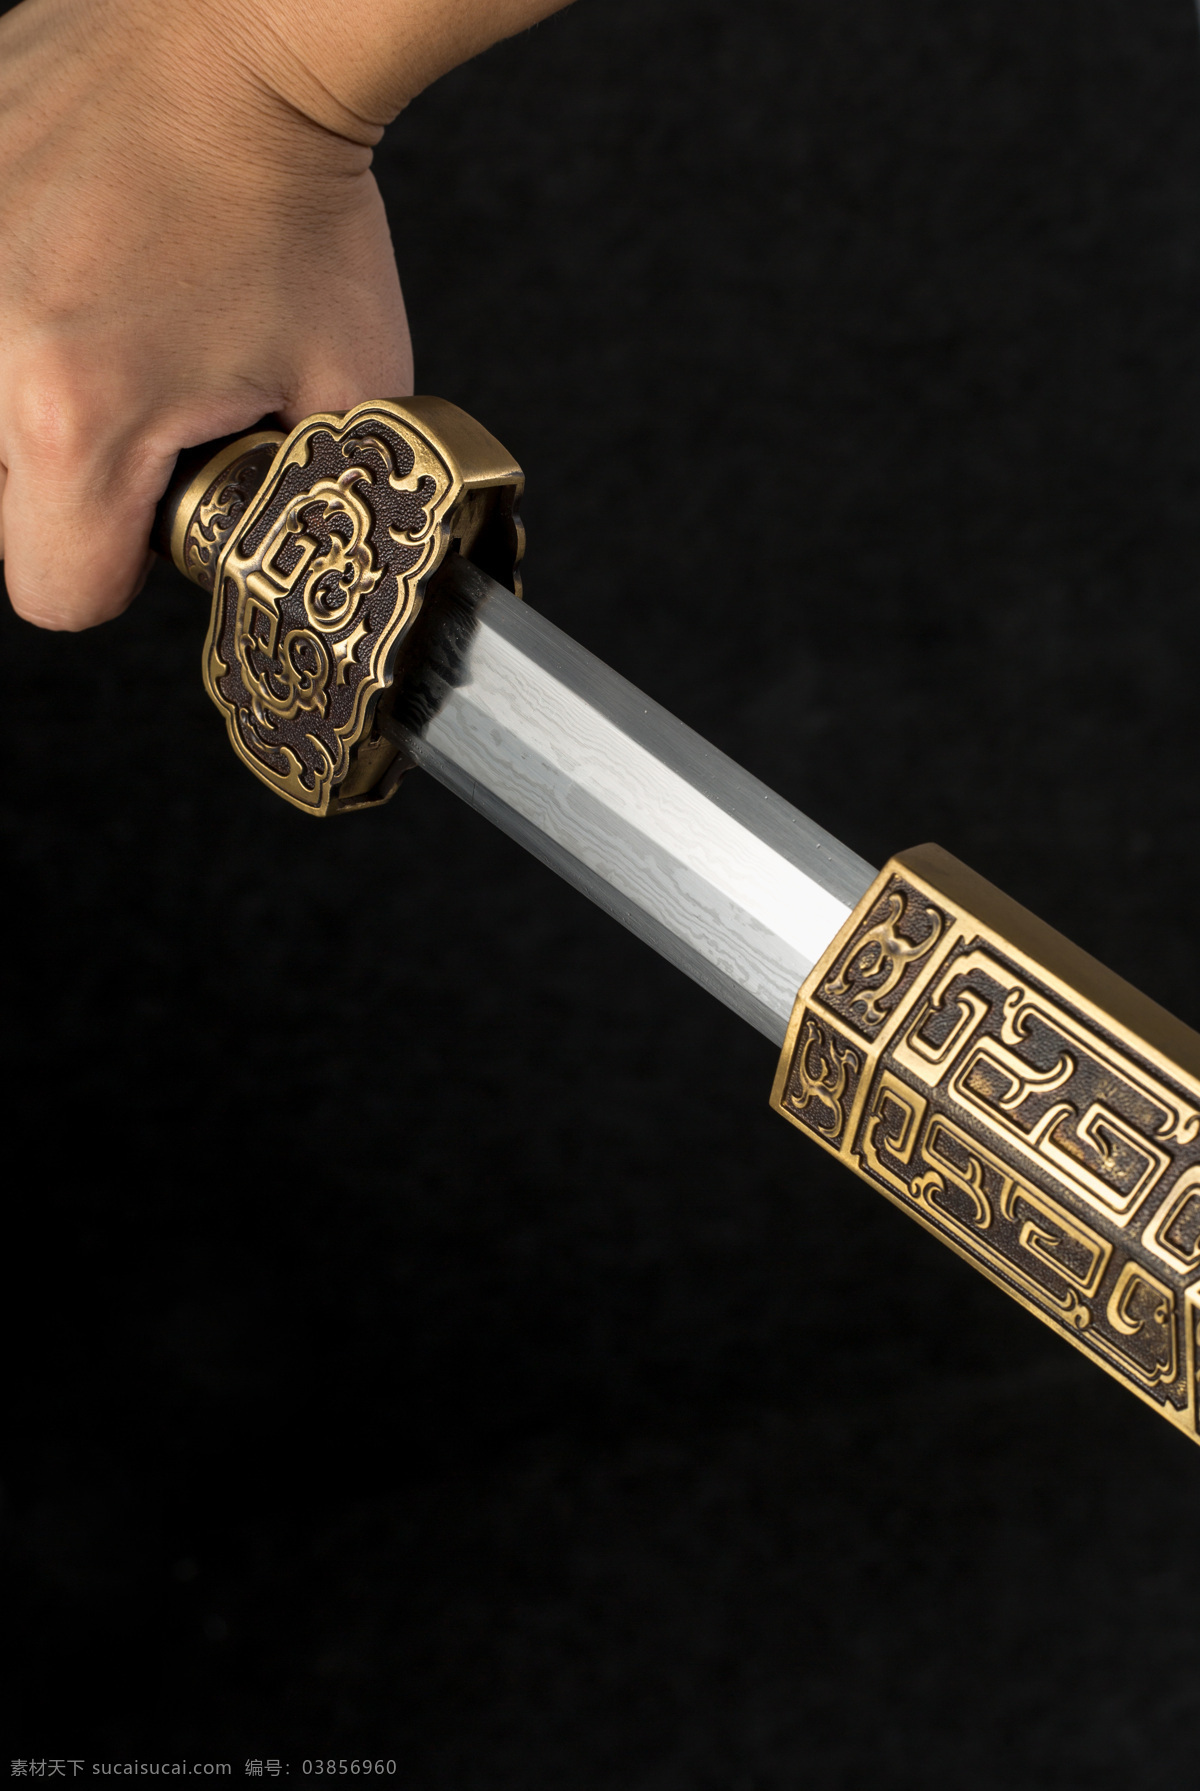 宝剑汉剑 龙泉宝剑 汉剑 霸气 汉王 花纹钢 铜 配件 文化艺术